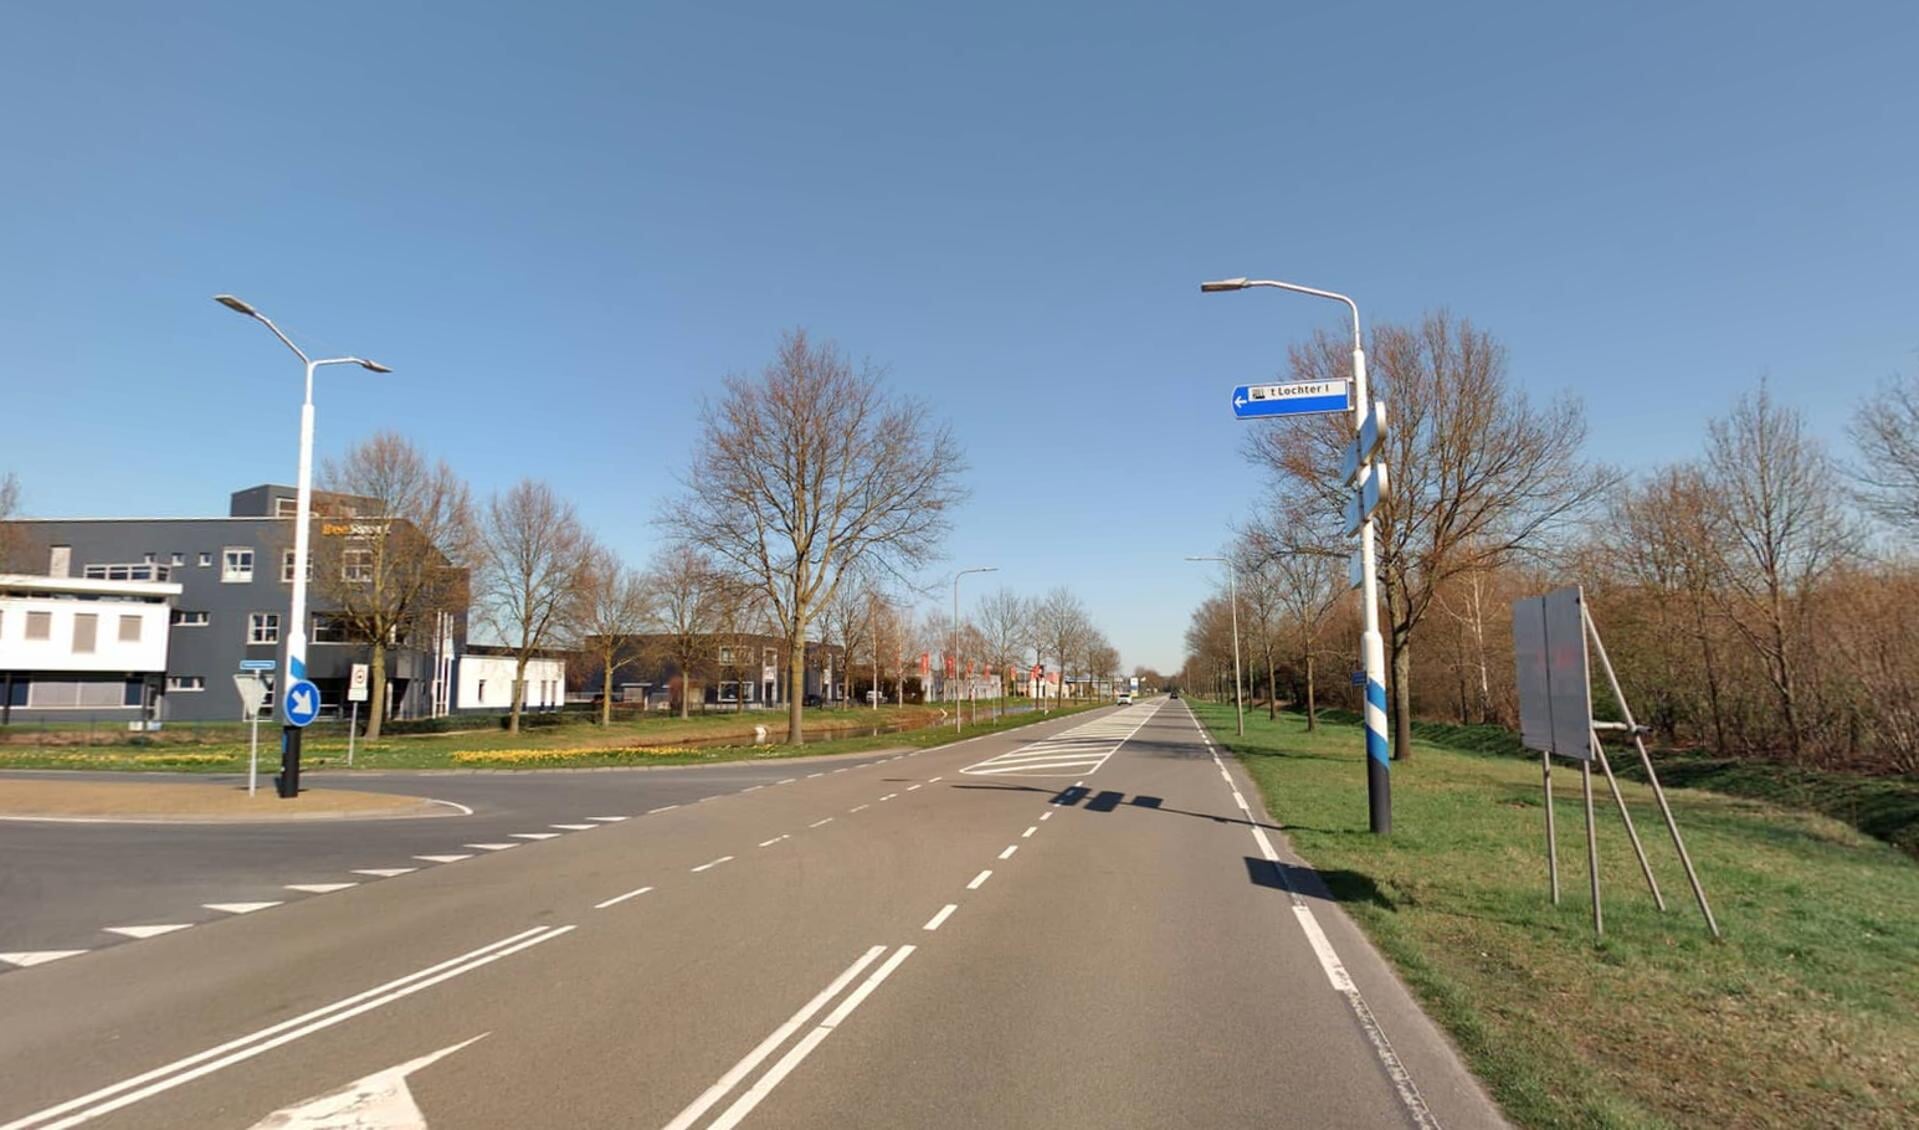 Om ervoor te zorgen dat de bereikbaarheid en de verkeersveiligheid ook in de toekomst op niveau blijft, pleegt de gemeente Hellendoorn groot onderhoud aan de Burgemeester H. Boersingel.